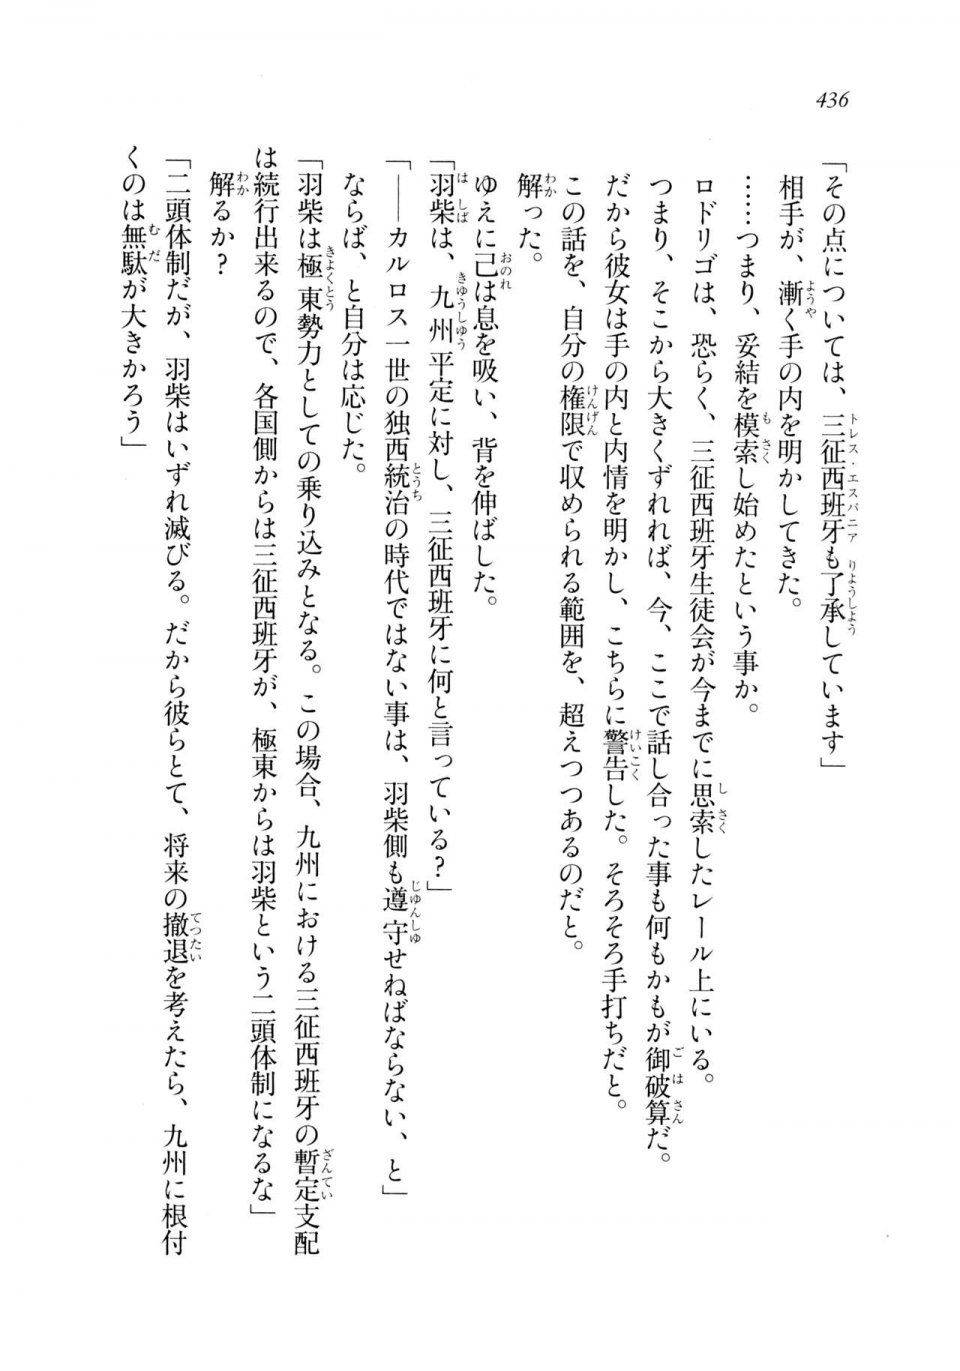 Kyoukai Senjou no Horizon LN Sidestory Vol 2 - Photo #434